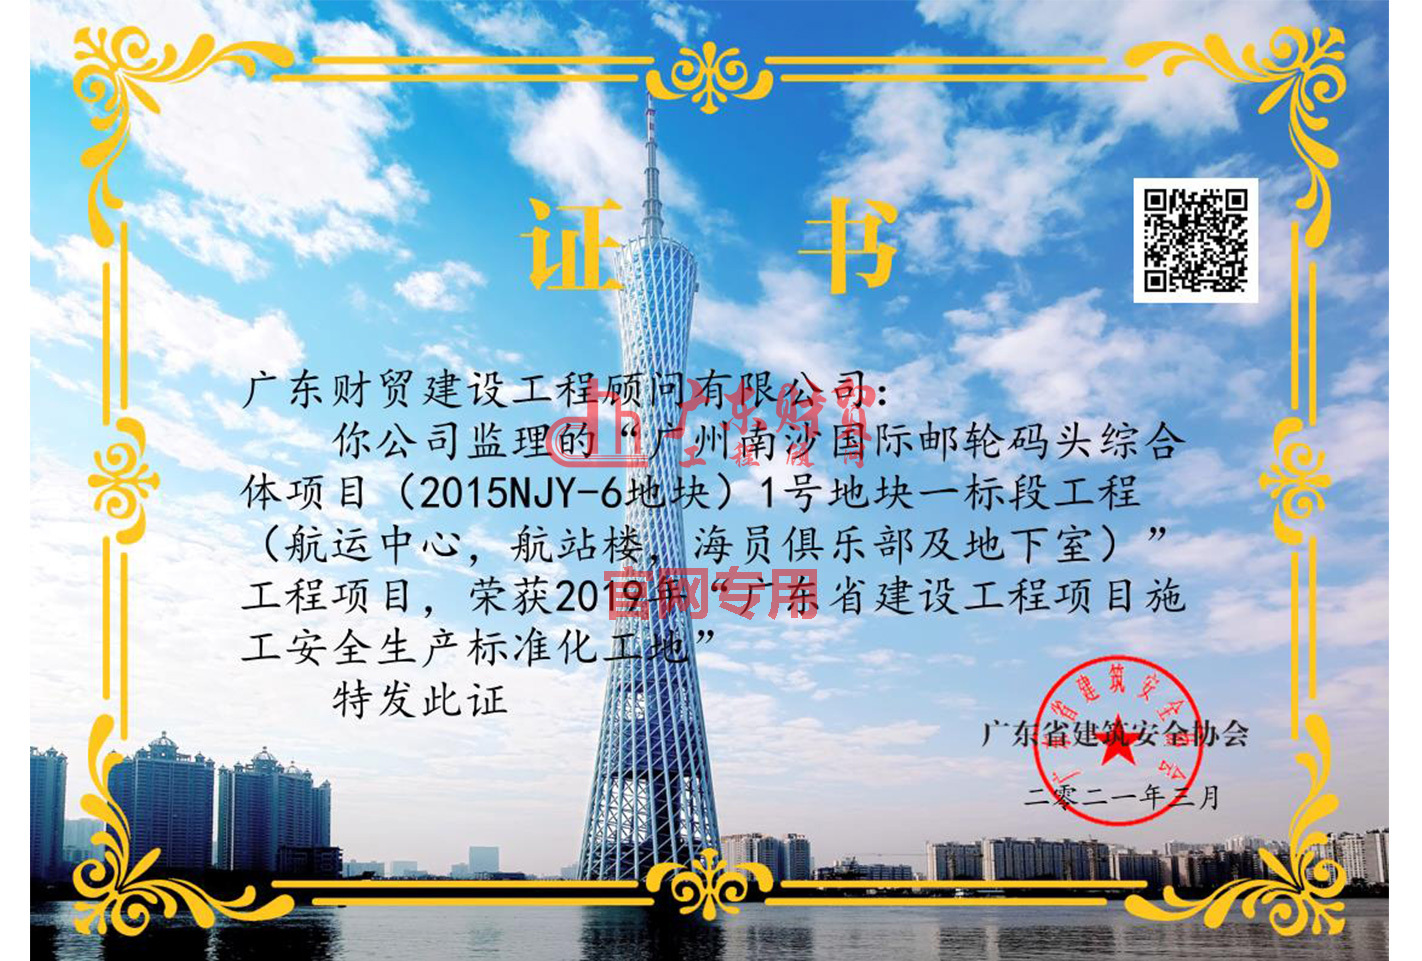 2021年“广州南沙国际邮轮码头综合体项目（2015NJY-6地块）1号地块一标段工程（航运中心，航站楼，海员俱乐部及地下室）”“2019年广东省建设工程项目施工安全生产标准化工地”